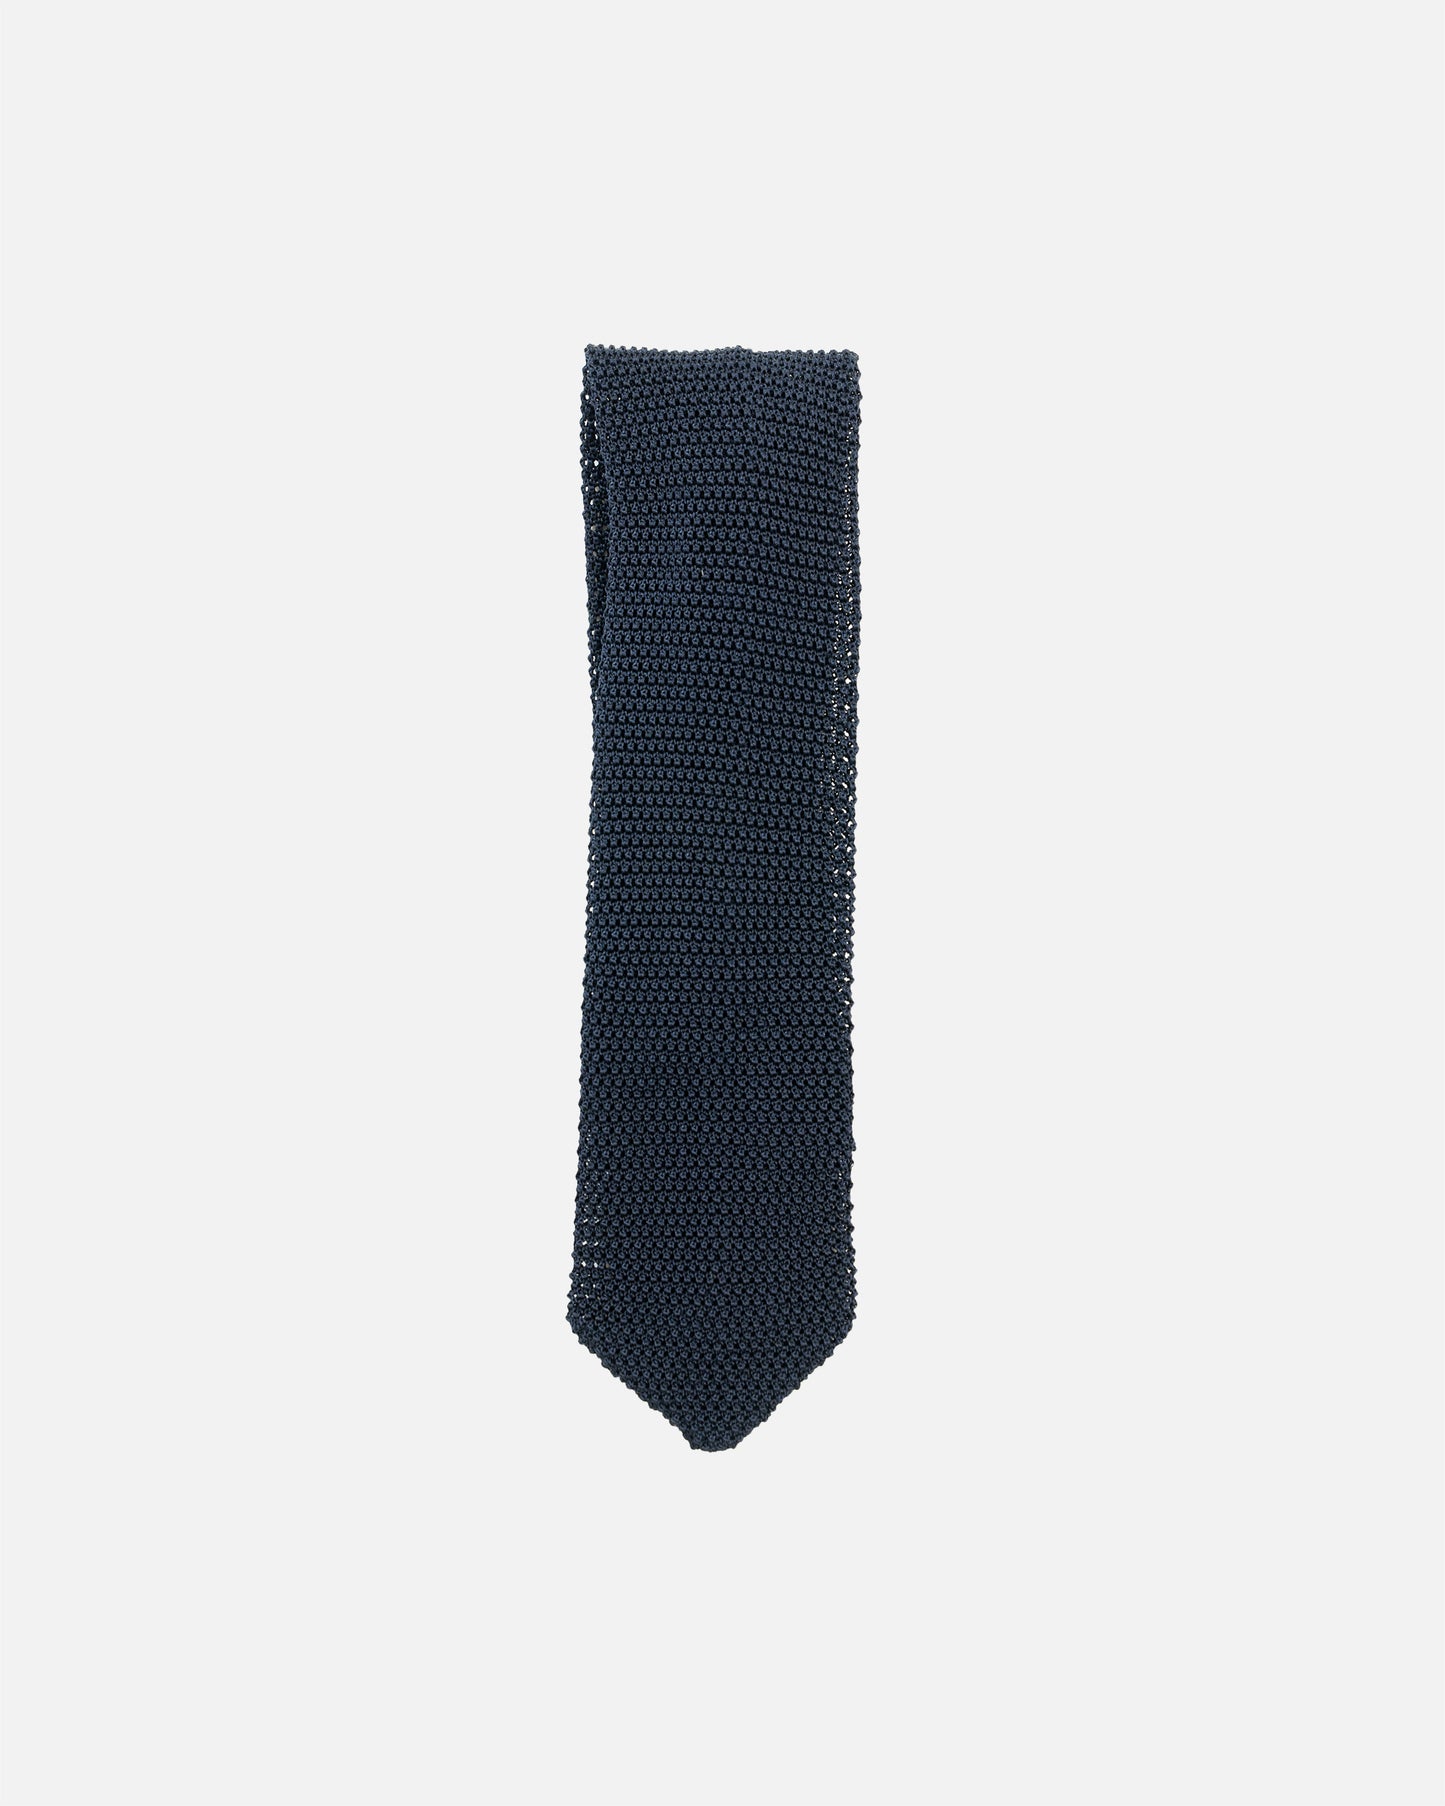 The Decorum Knit Tie in Navy